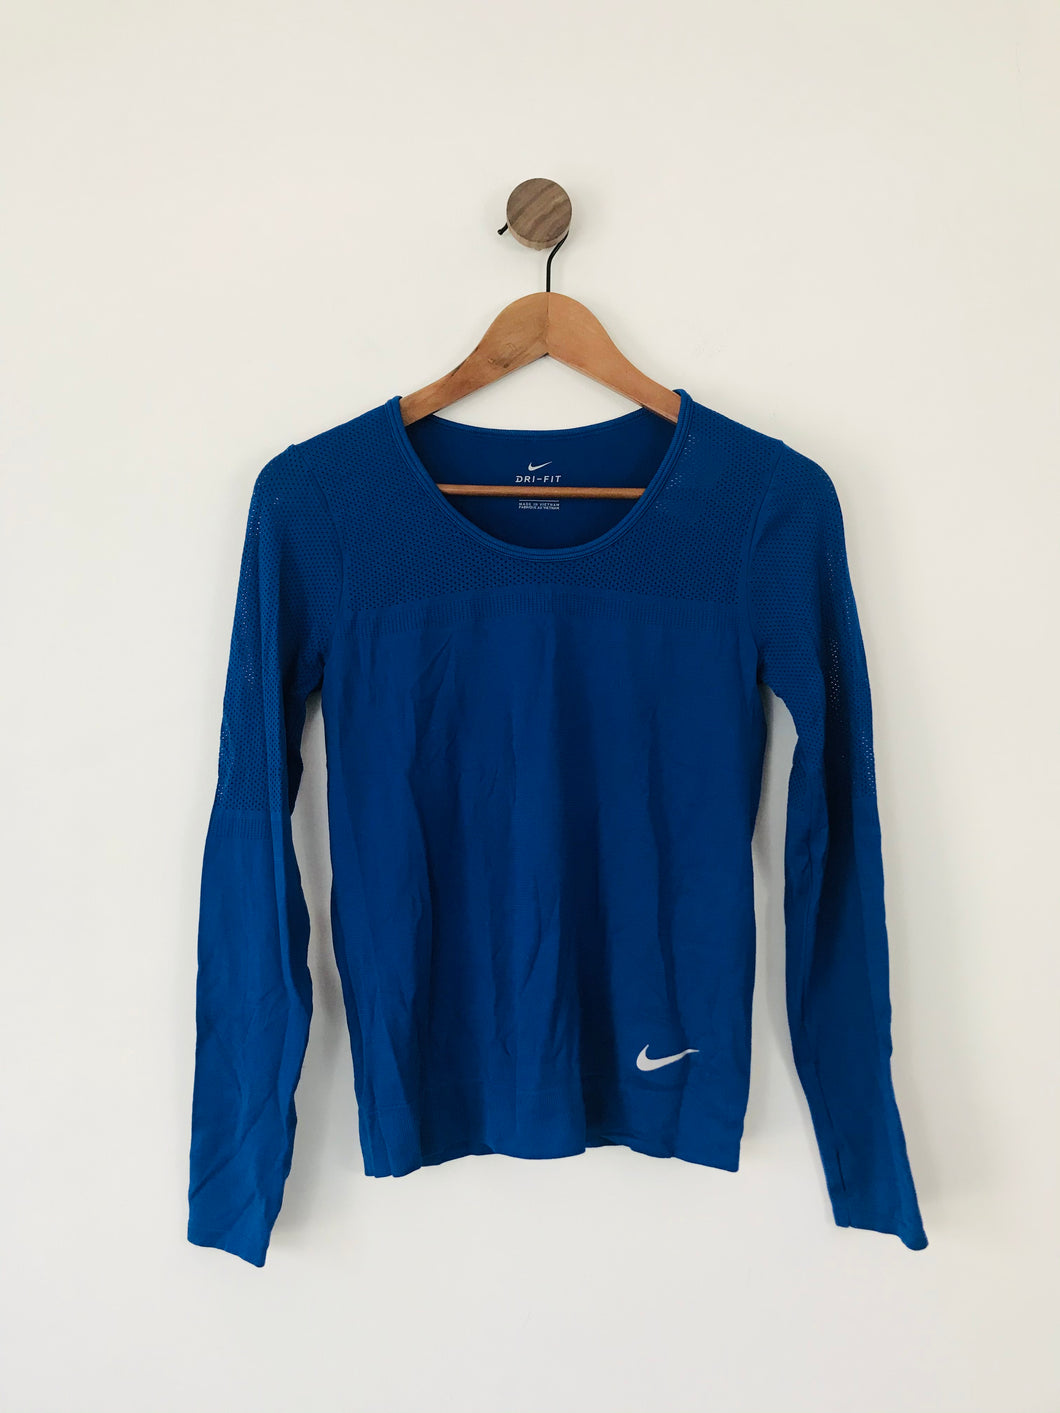 Nike Dri-Fit Women’s Long Sleeve Sports Top | S UK8 | Blue